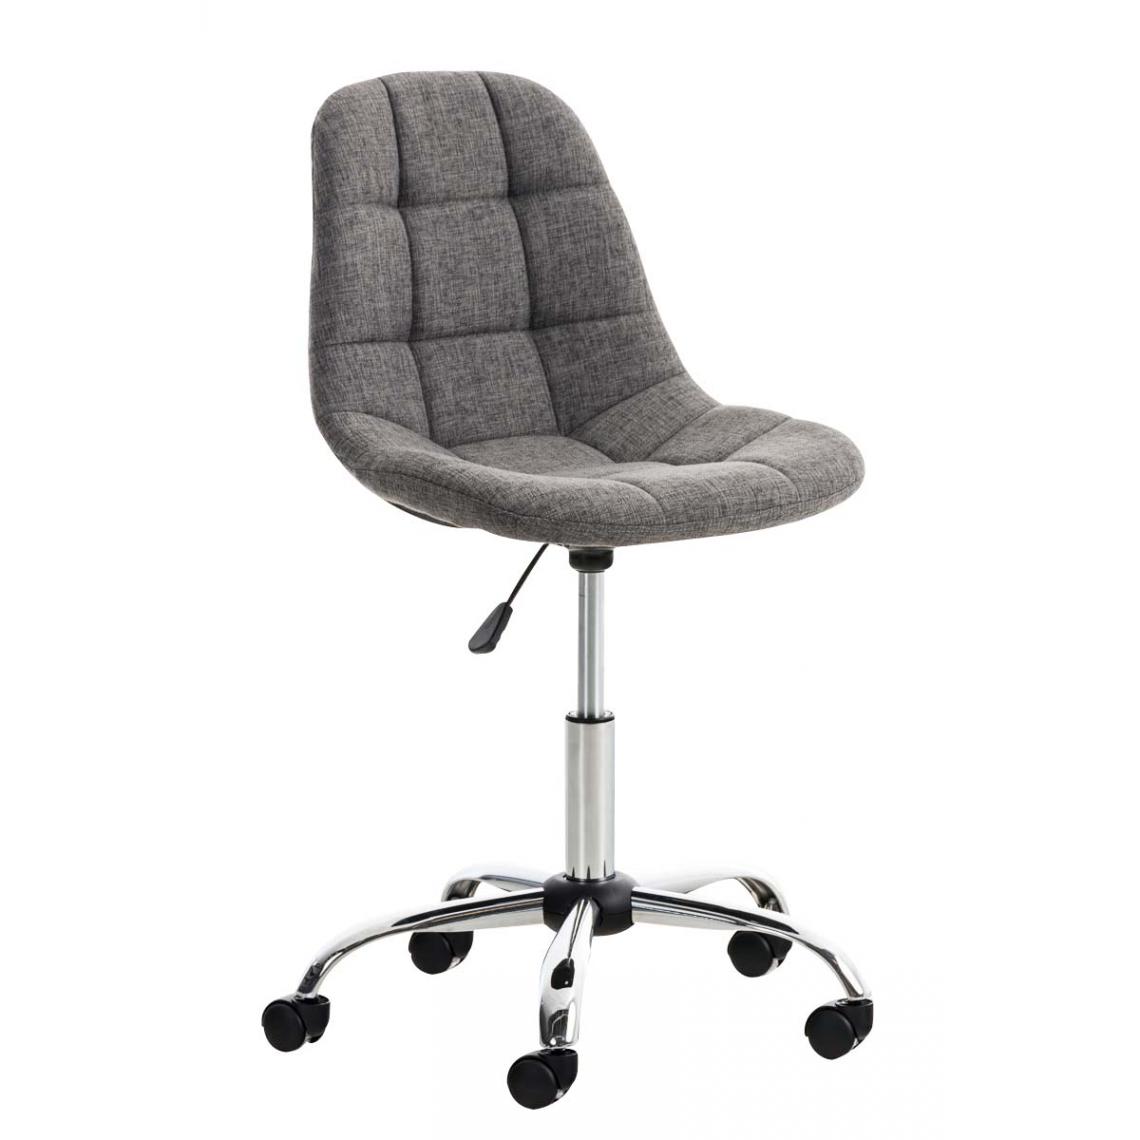 Icaverne - Esthetique Chaise de bureau serie Sanaa Stoff couleur gris clair - Chaises